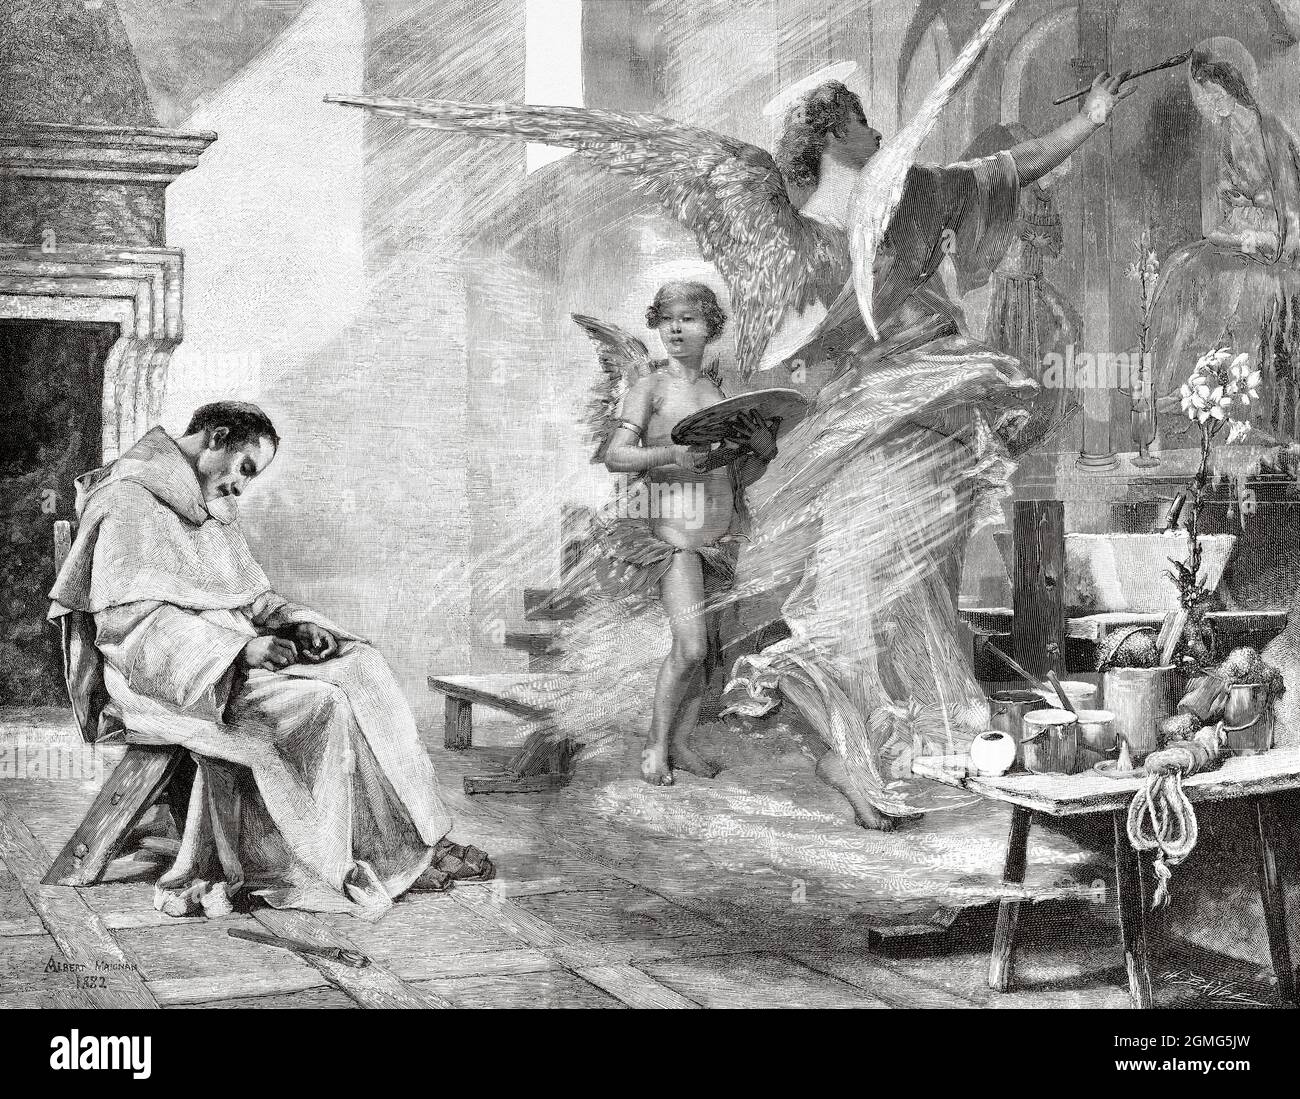 Le rêve de FRA Angelico, peinture d'Albert Pierre René Maignan (1845-1908) est un peintre et illustrateur d'histoire français. Ancienne illustration gravée du XIXe siècle de la Ilustración Artística 1882 Banque D'Images